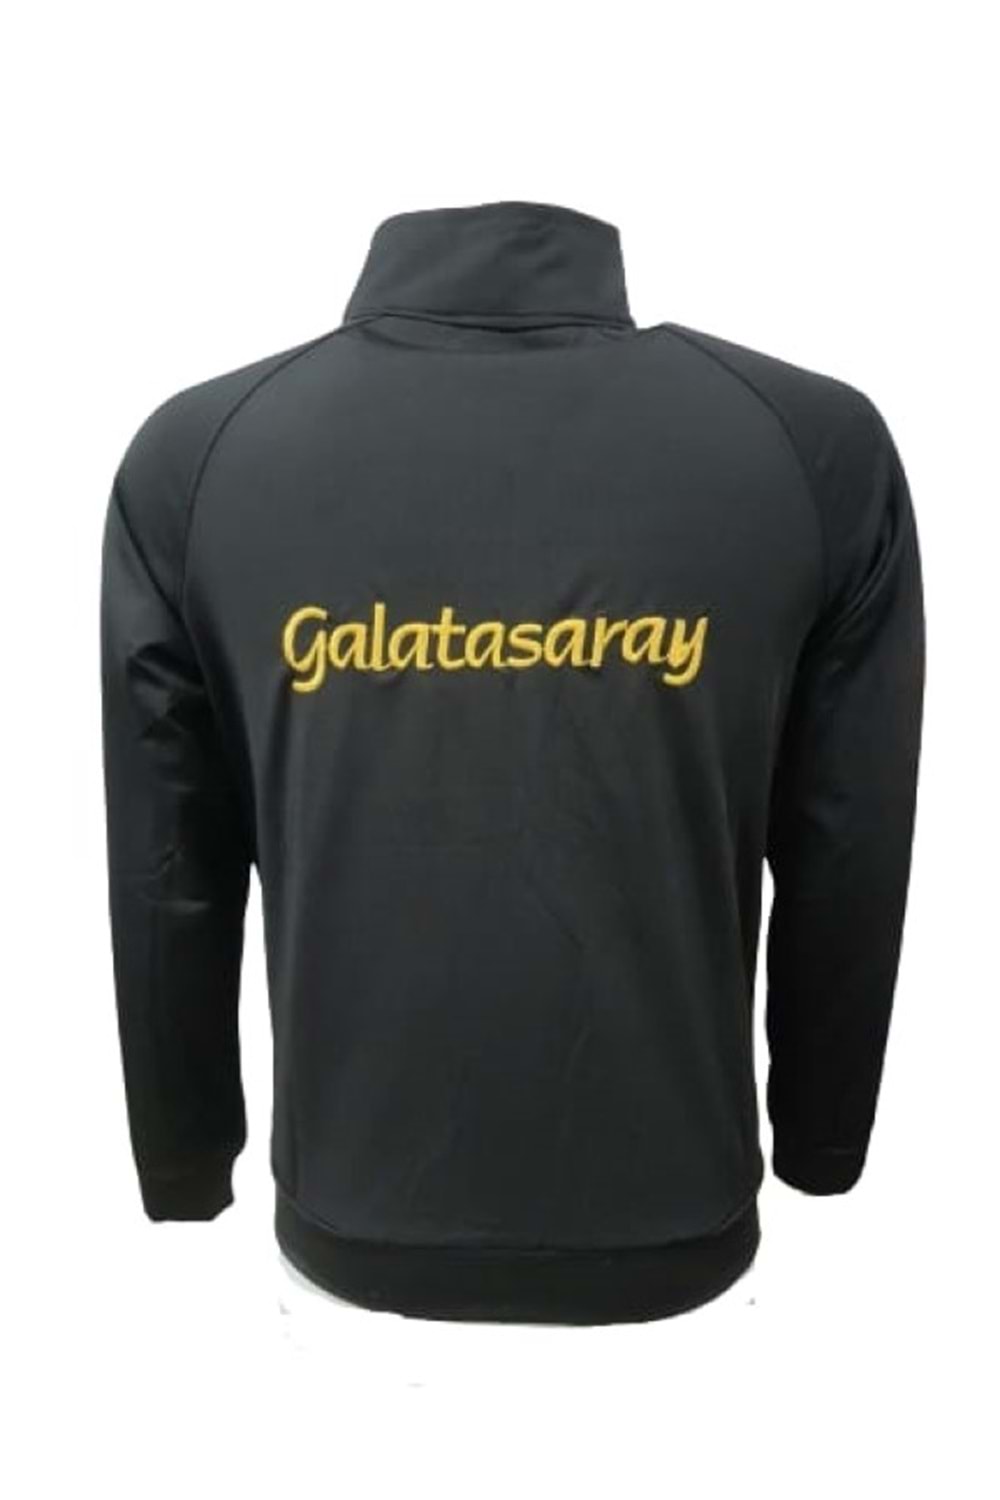 Galatasaray G02295 Erkek Dalgıç Sweatshirt Fermuarlı Antrenman Eşofman Üst - Siyah